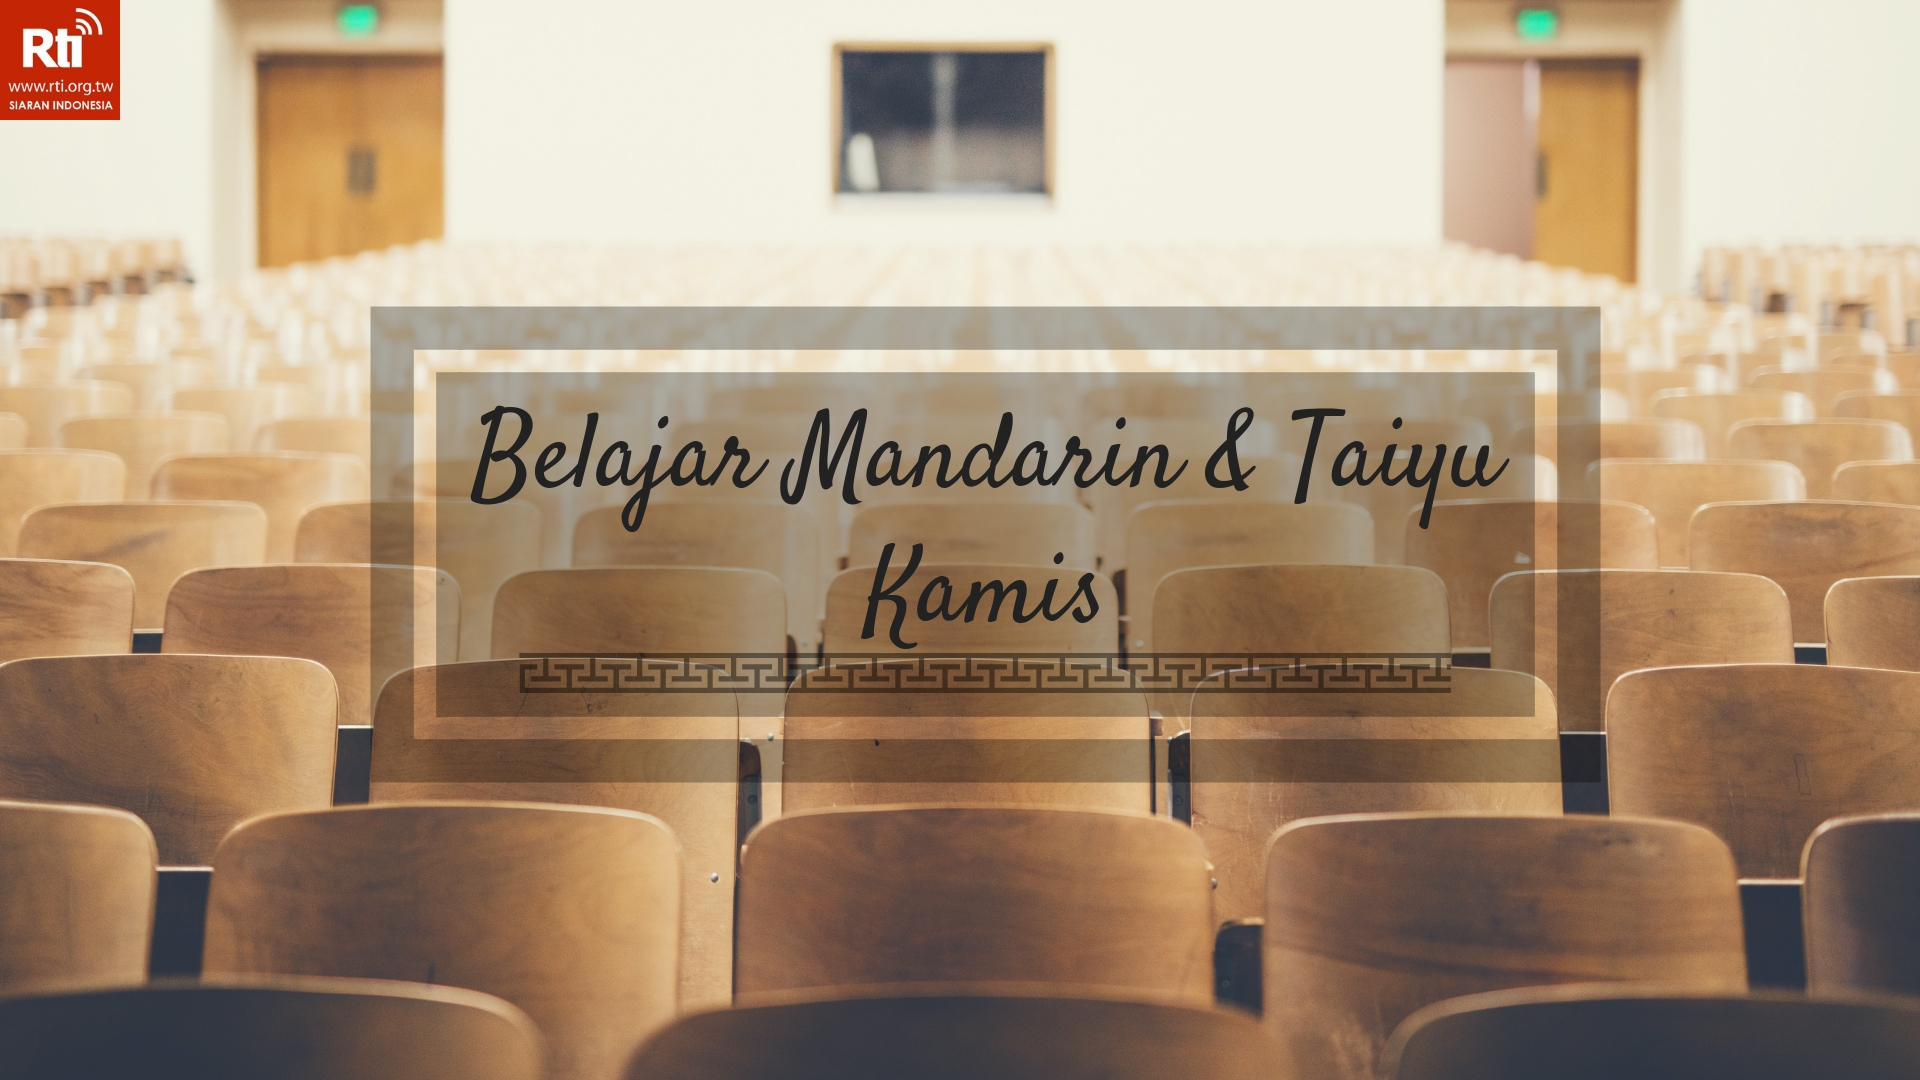 Belajar Mandarin, Taiyu dan Bahasa Indonesia: Kursus Membatik 上蠟染課